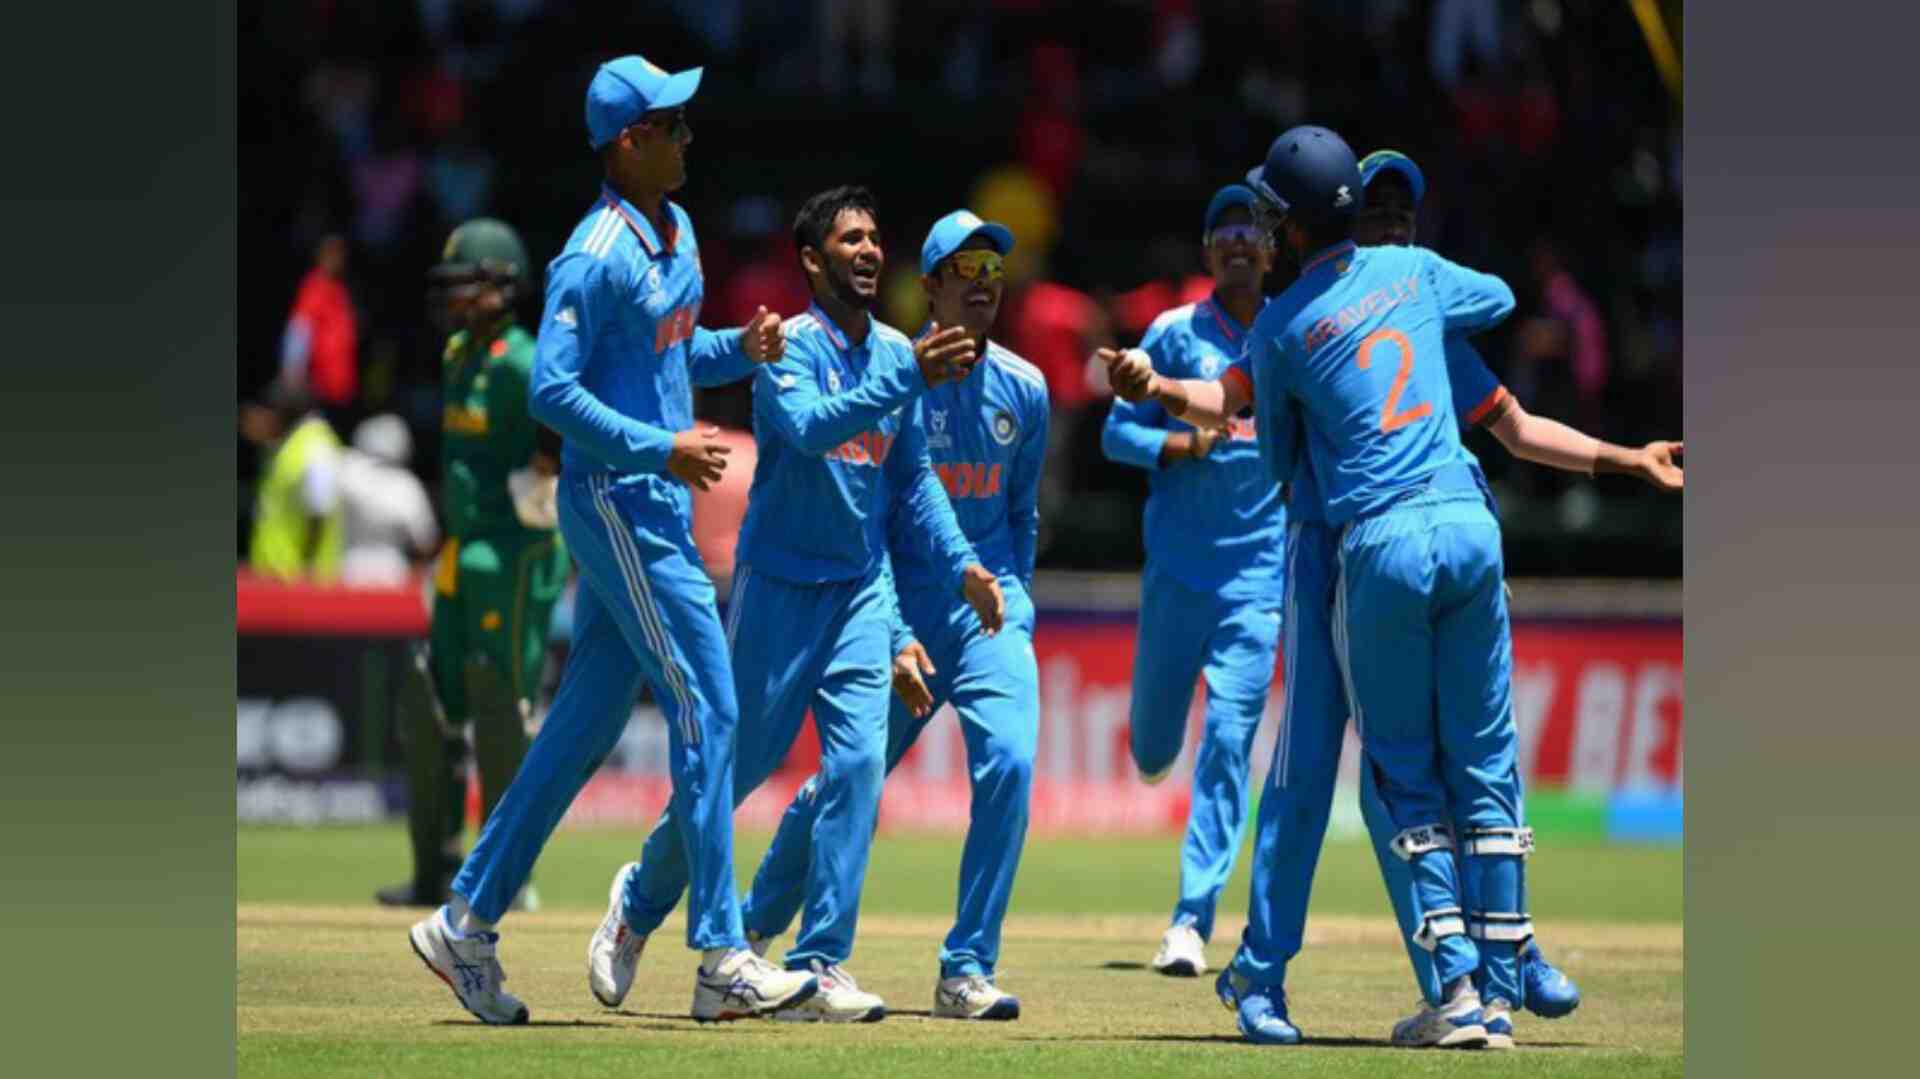 भारत ने दक्षिण अफ्रीका को दो विकेट से हराकर नौवीं बार अंडर-19 विश्व कप फाइनल में बनाई जगह